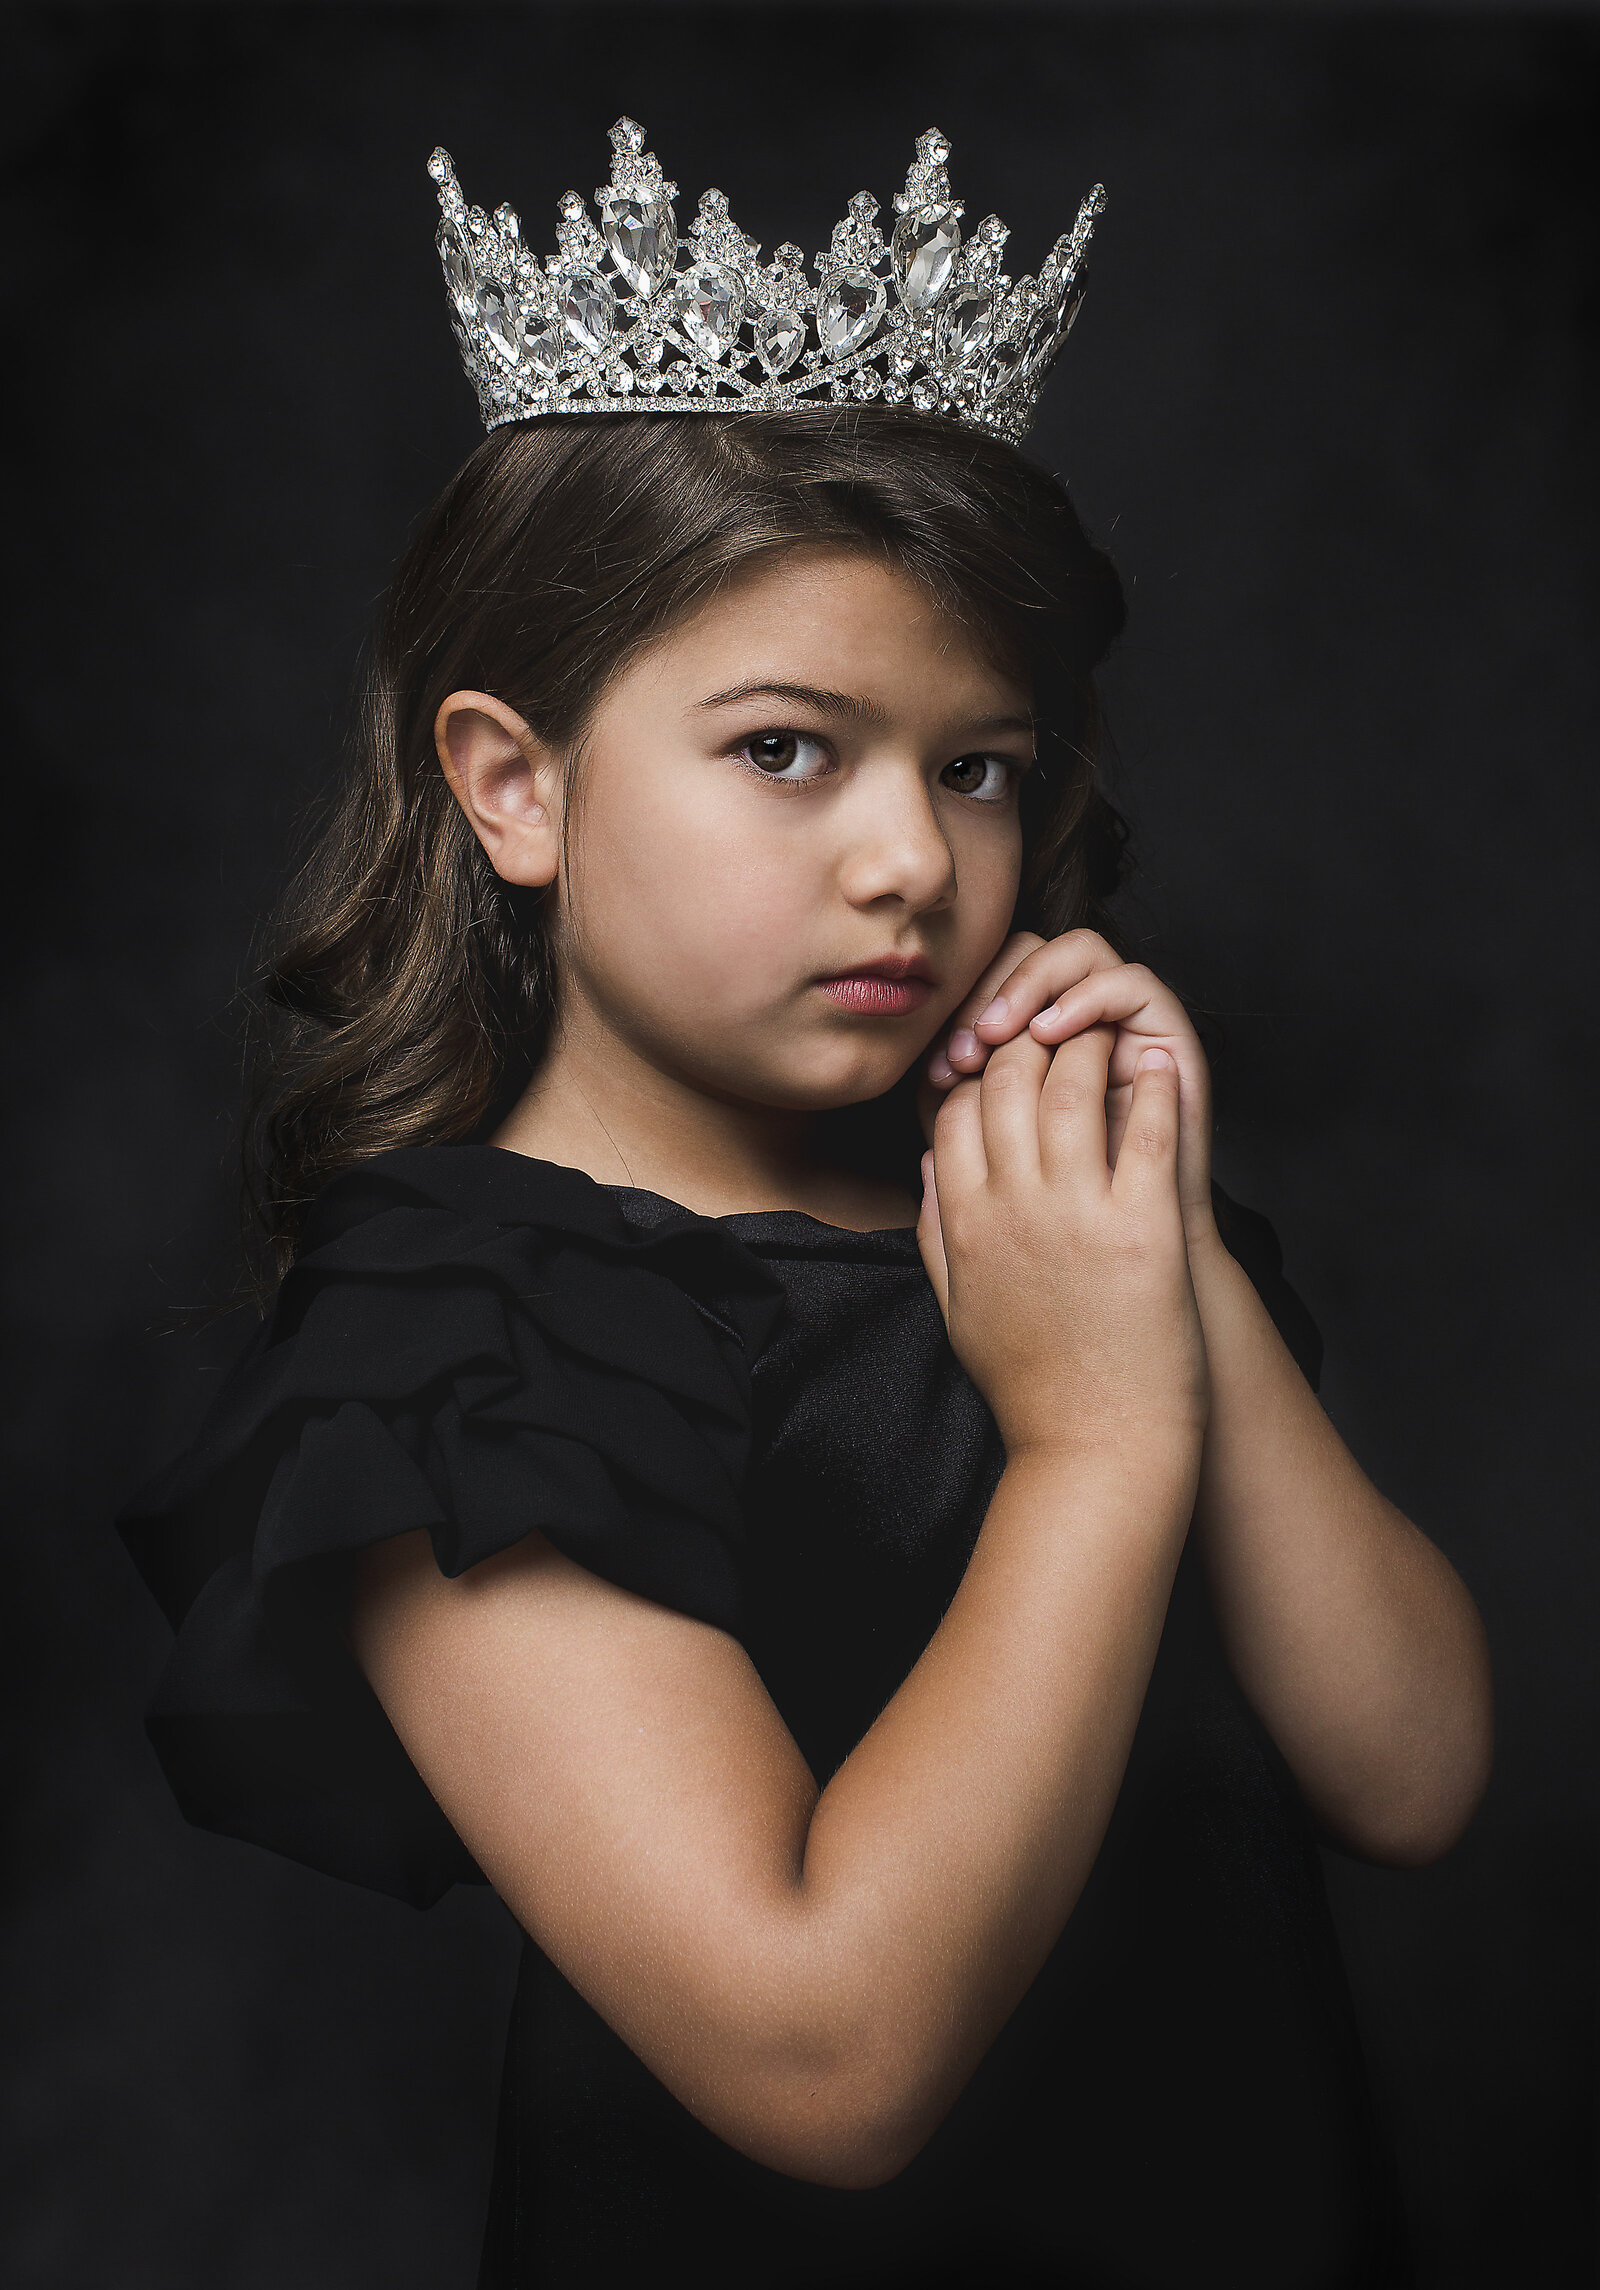 Martha Felix Photography girl with crown